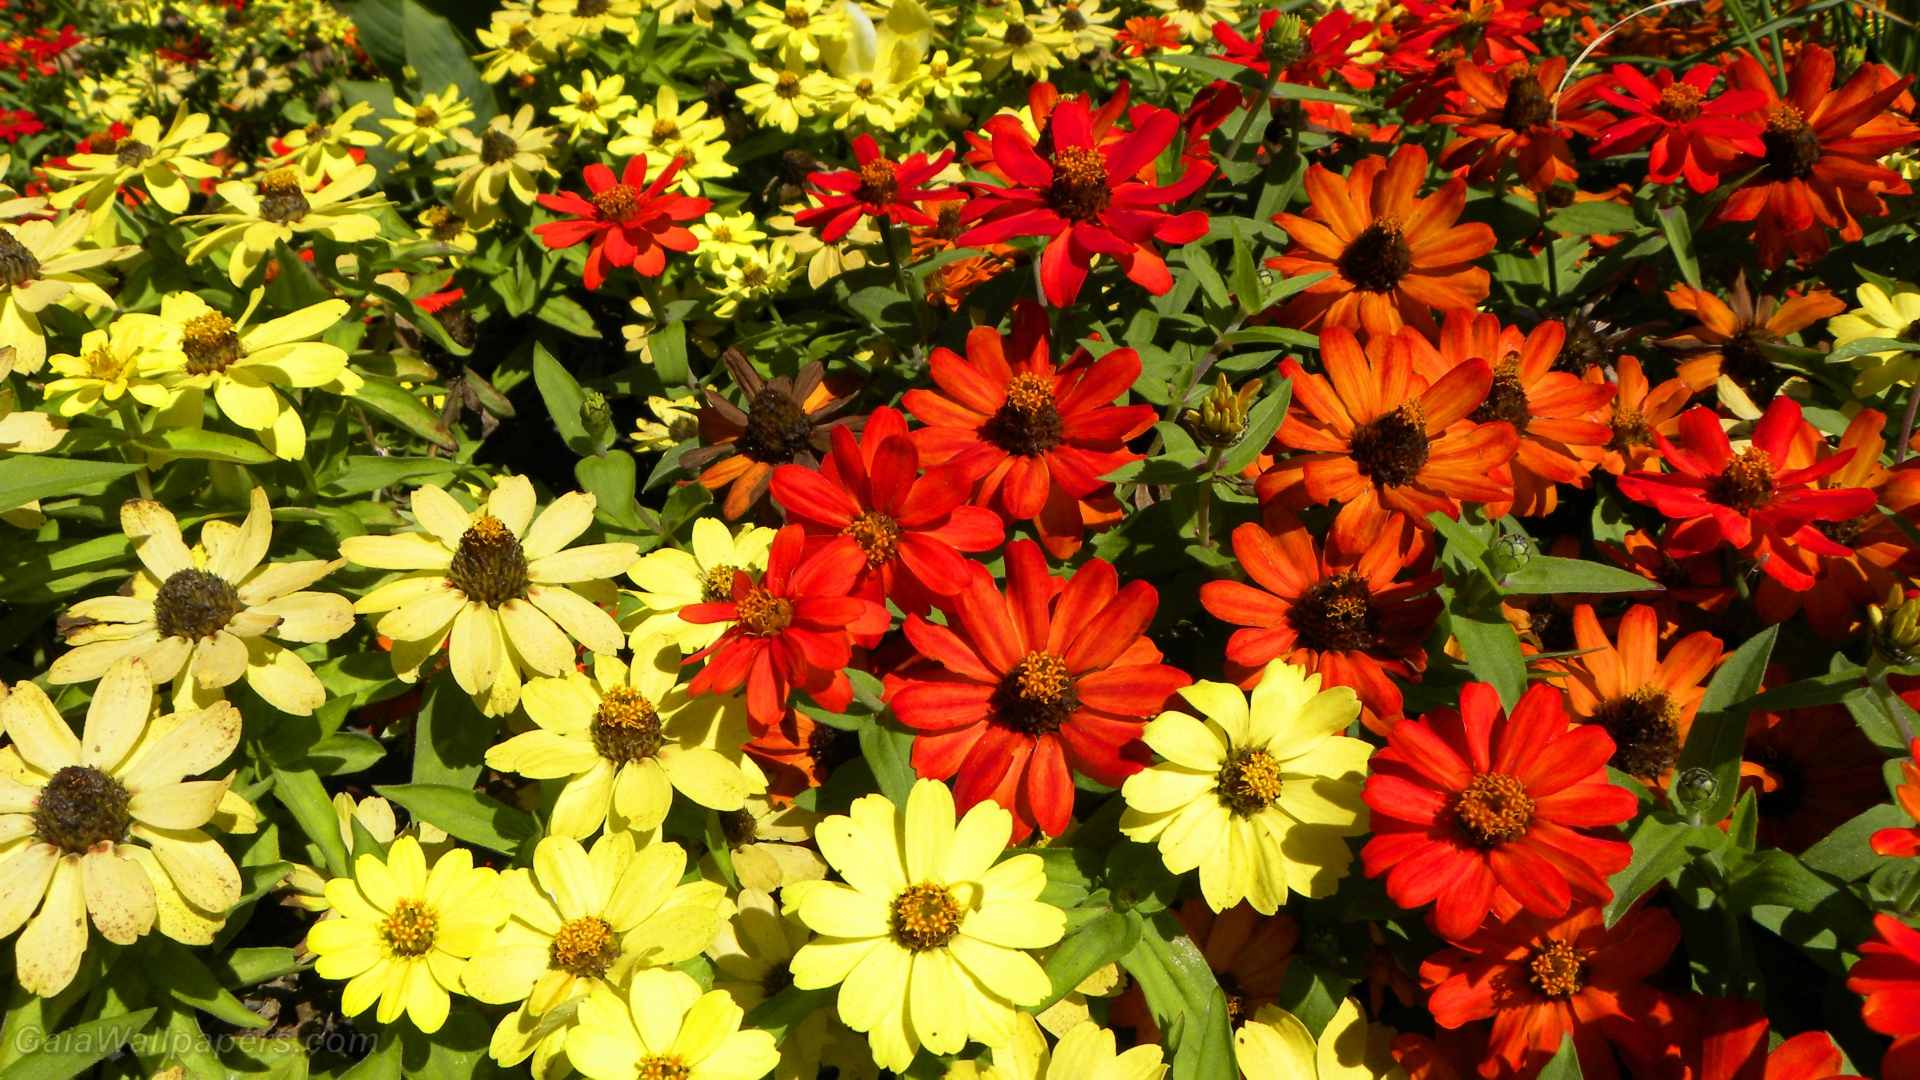 Flowers throwing warm colors - Free desktop wallpapers